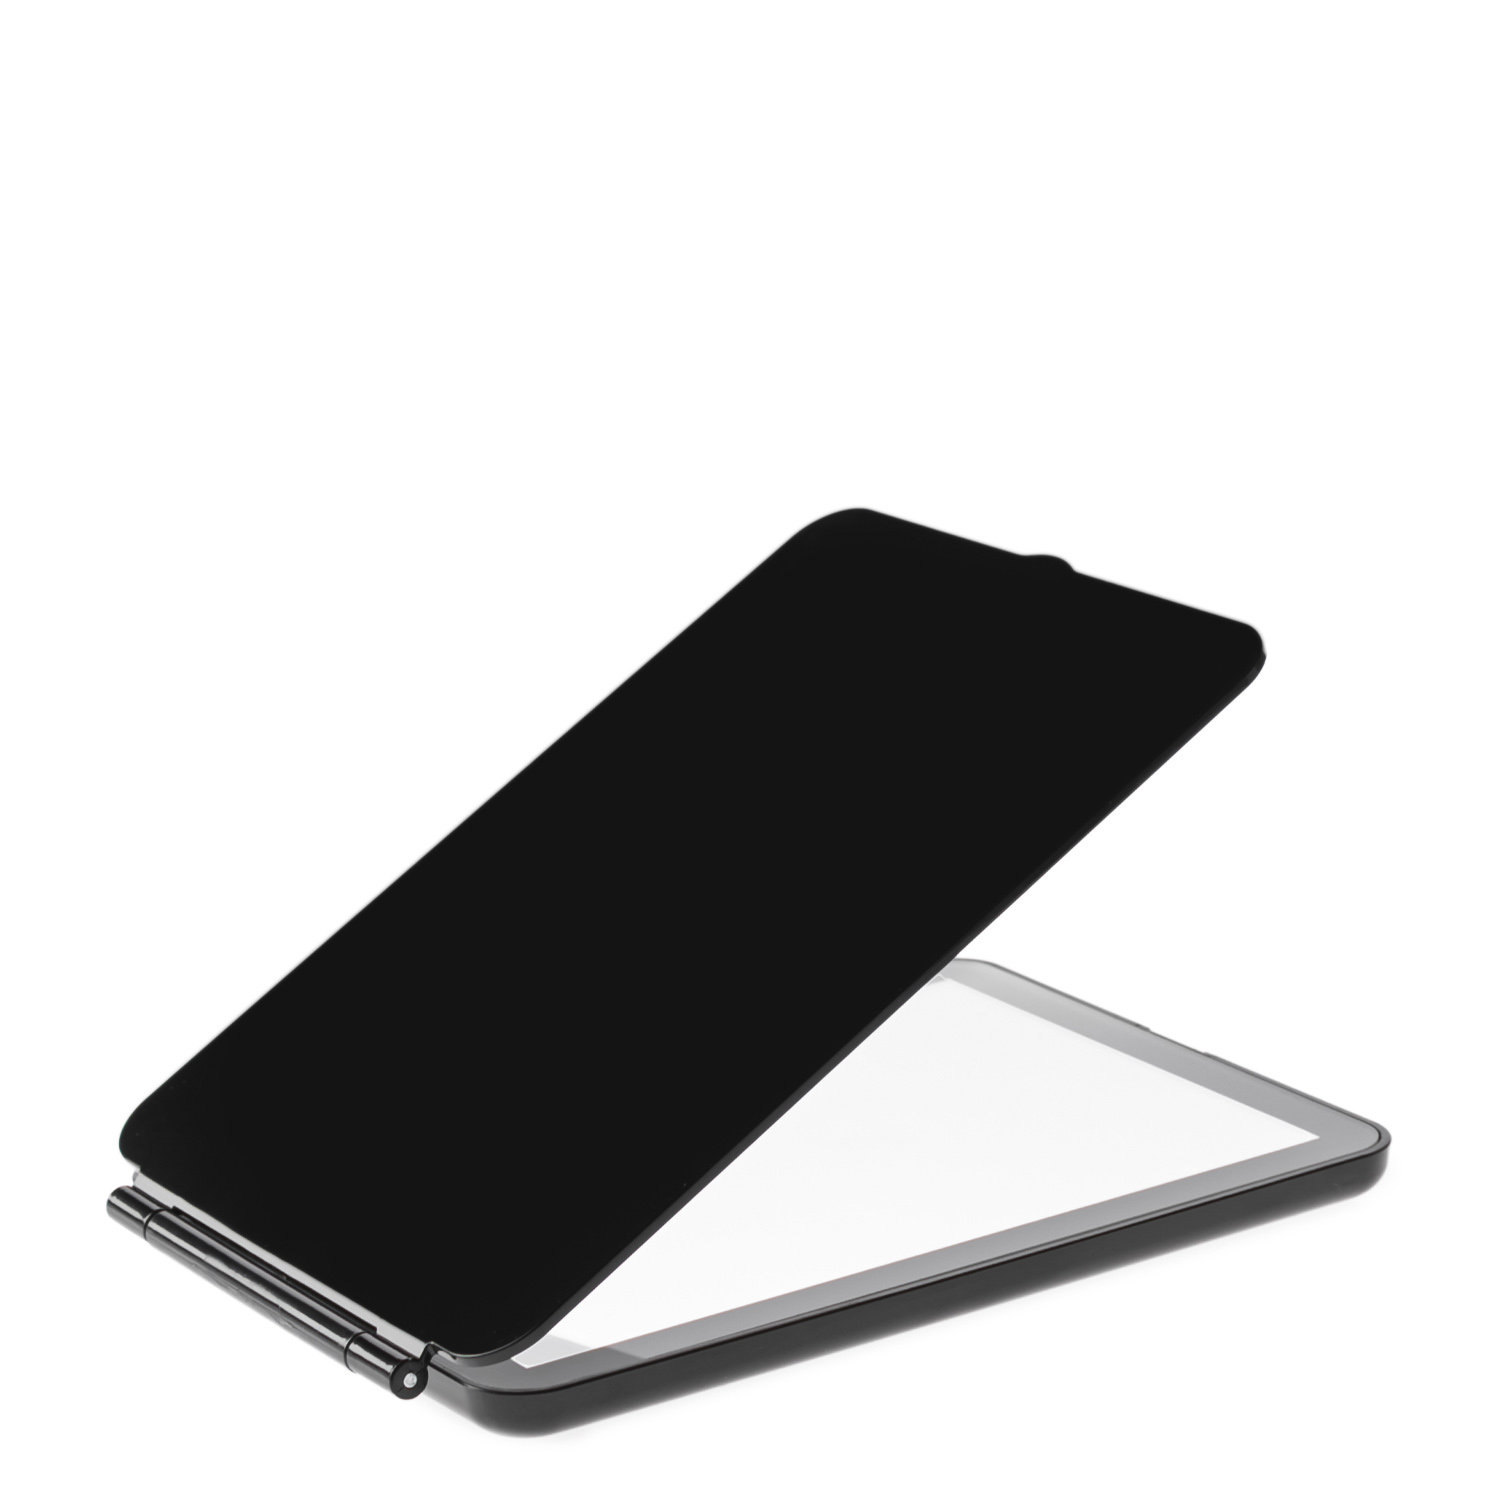 Зеркало косметическое CleverCare в форме планшета с LED подсветкой монохром цвет черный - фото 5